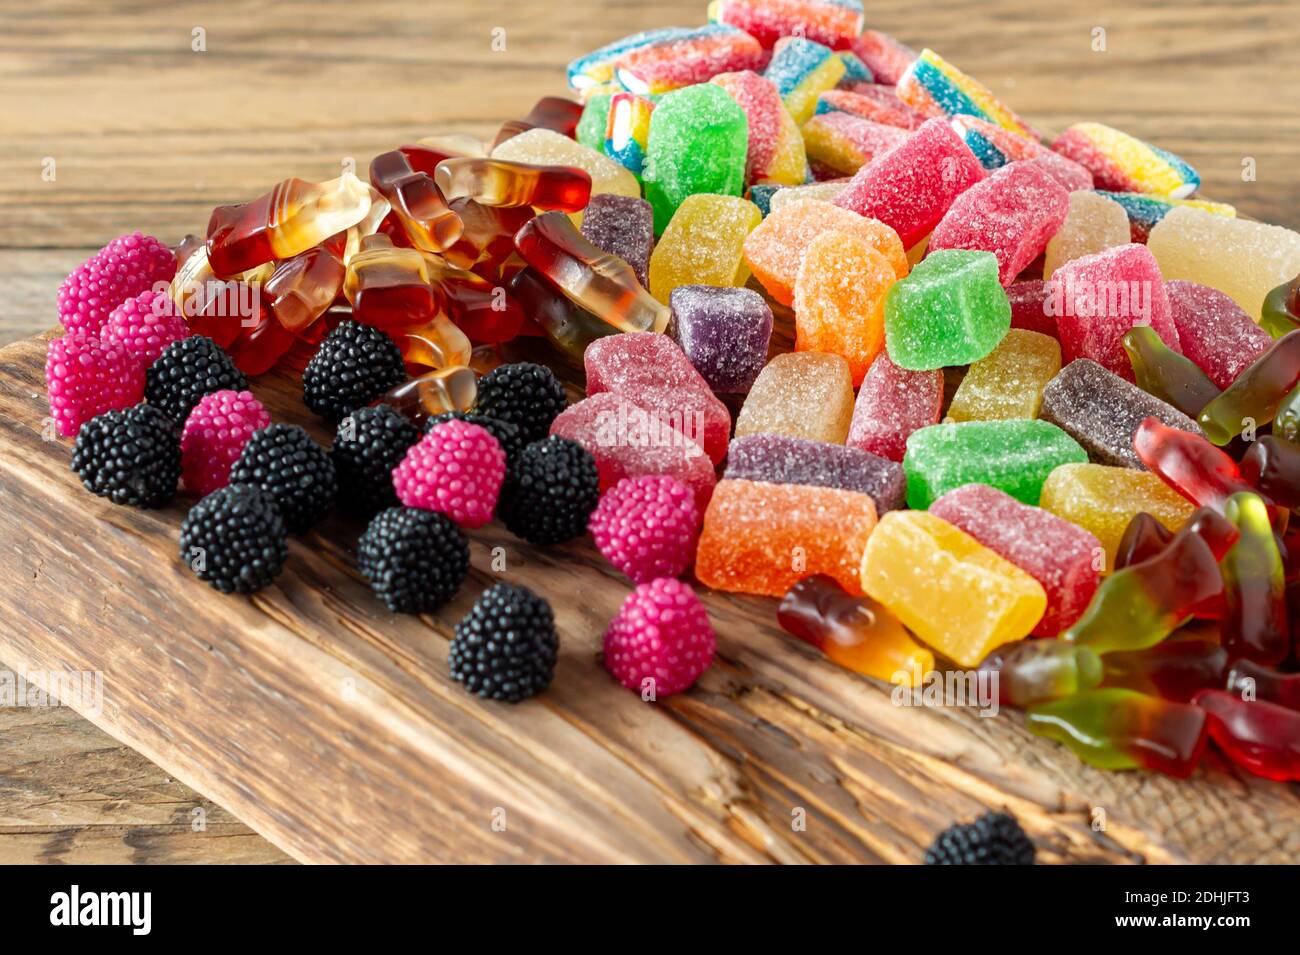 Bonbons à la marmelade de fruits, bonbons en gelée sur un bureau en bois.  Dessert naturel aux fruits avec sucre Photo Stock - Alamy